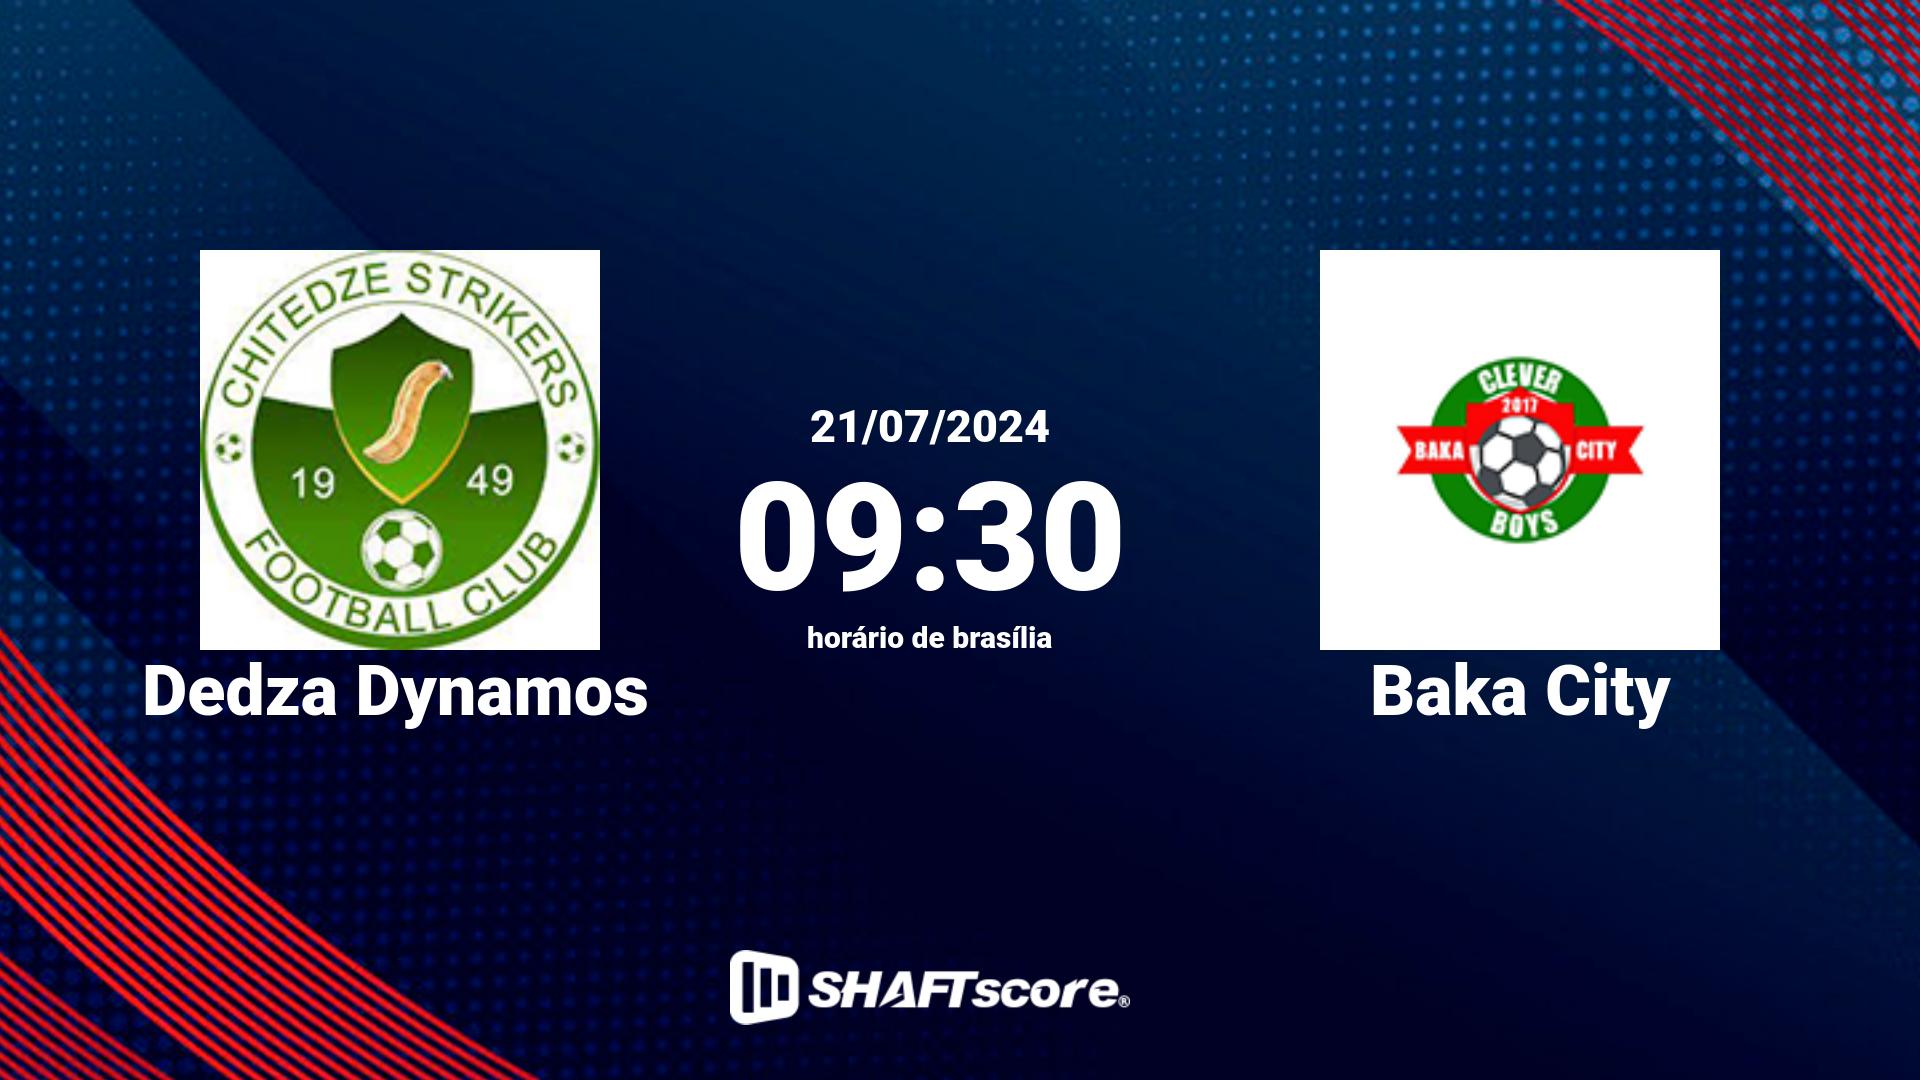 Estatísticas do jogo Dedza Dynamos vs Baka City 21.07 09:30